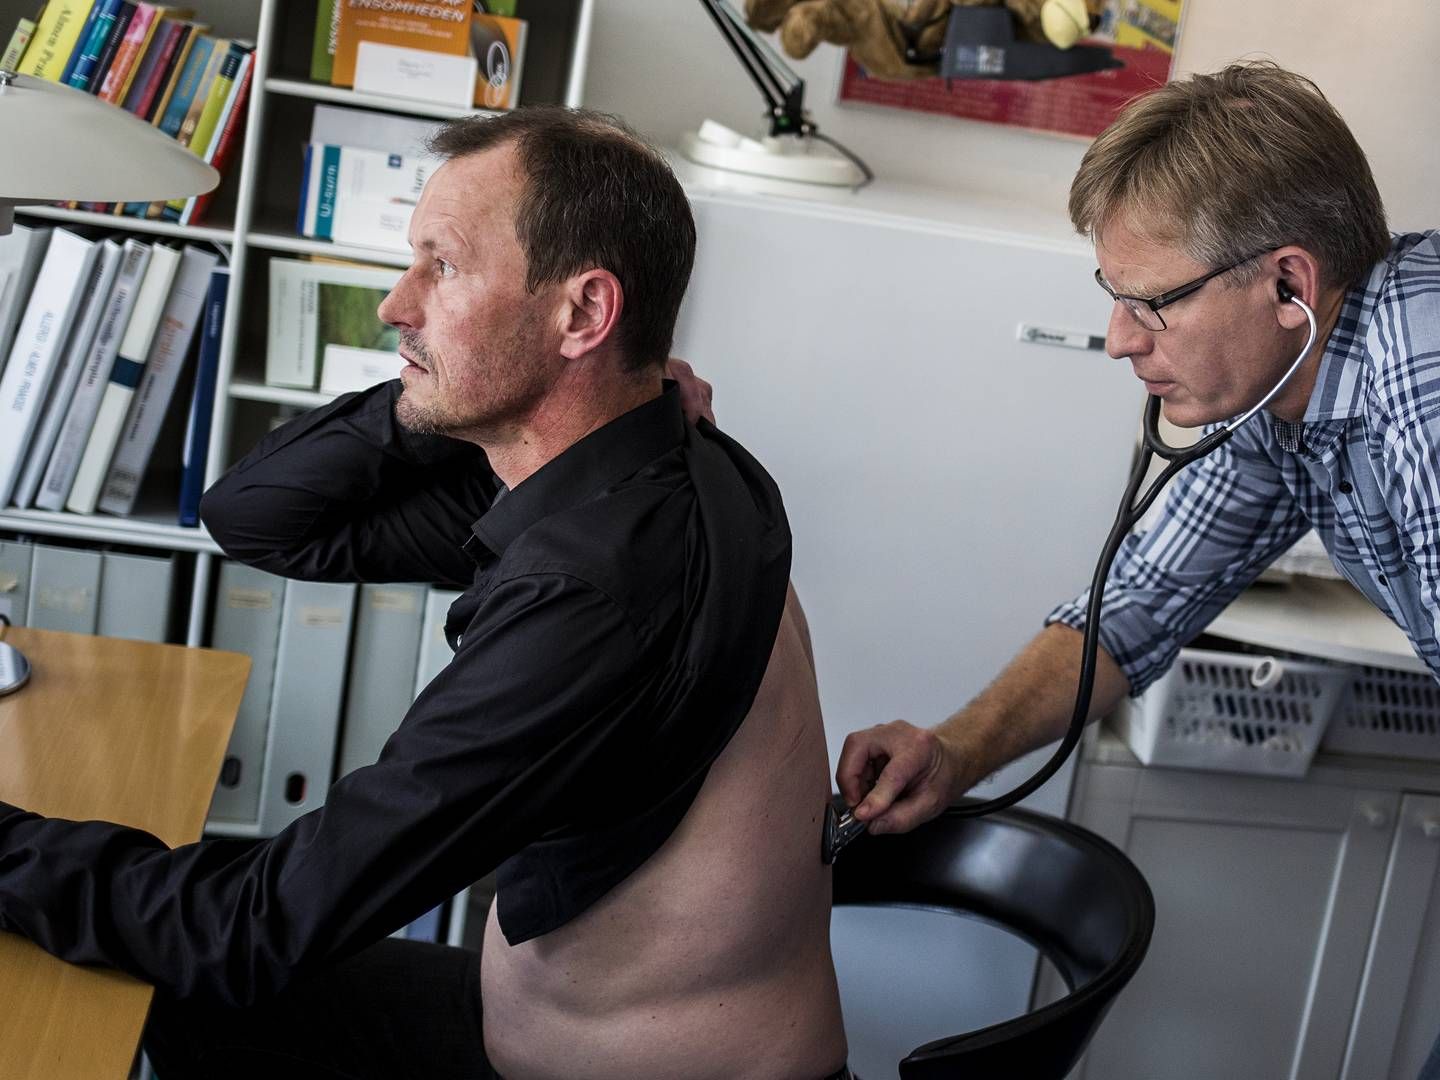 Selvom om ikke alle besøg hos lægen kan klares digitalt, så har coronapandemien skubbet til danskernes parathed til digitale konsultationer. | Foto: Simon Fals